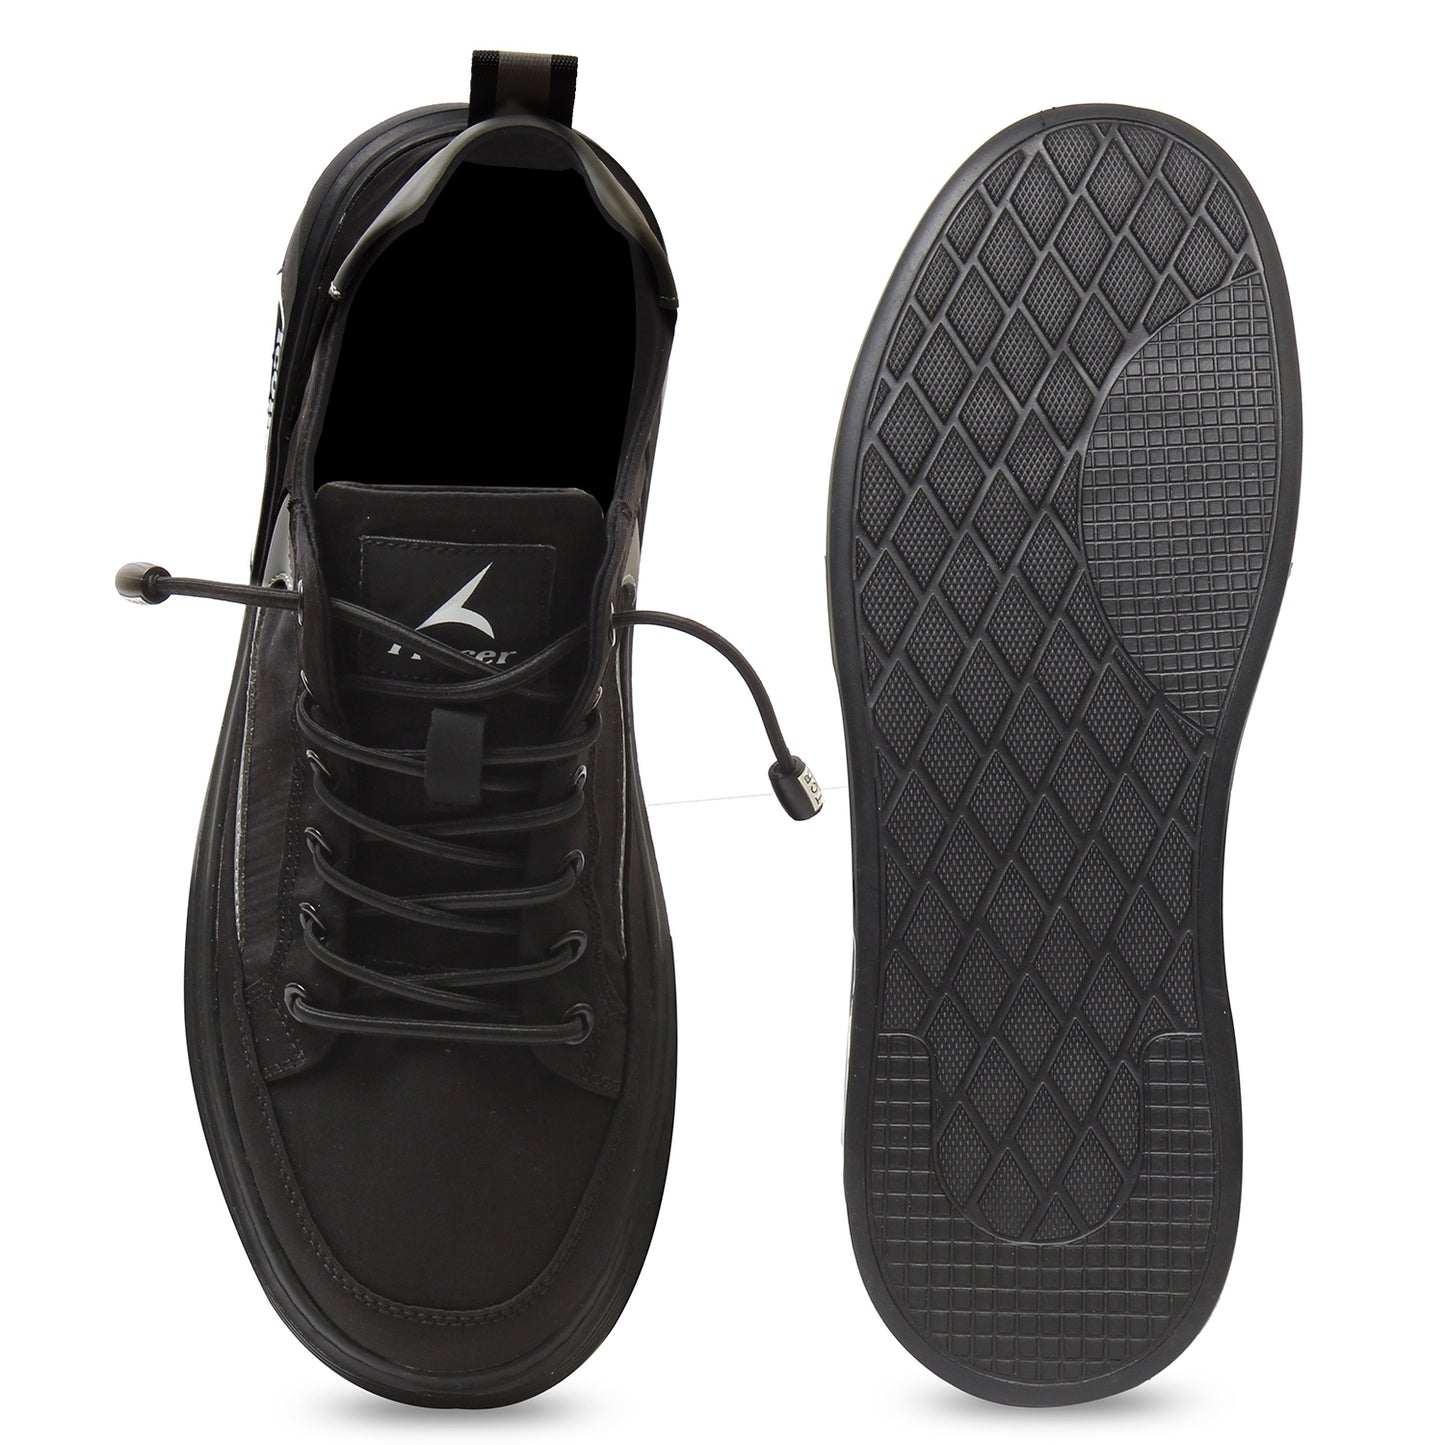 Tracer Scoosh 2711 Sneaker's for Men Black